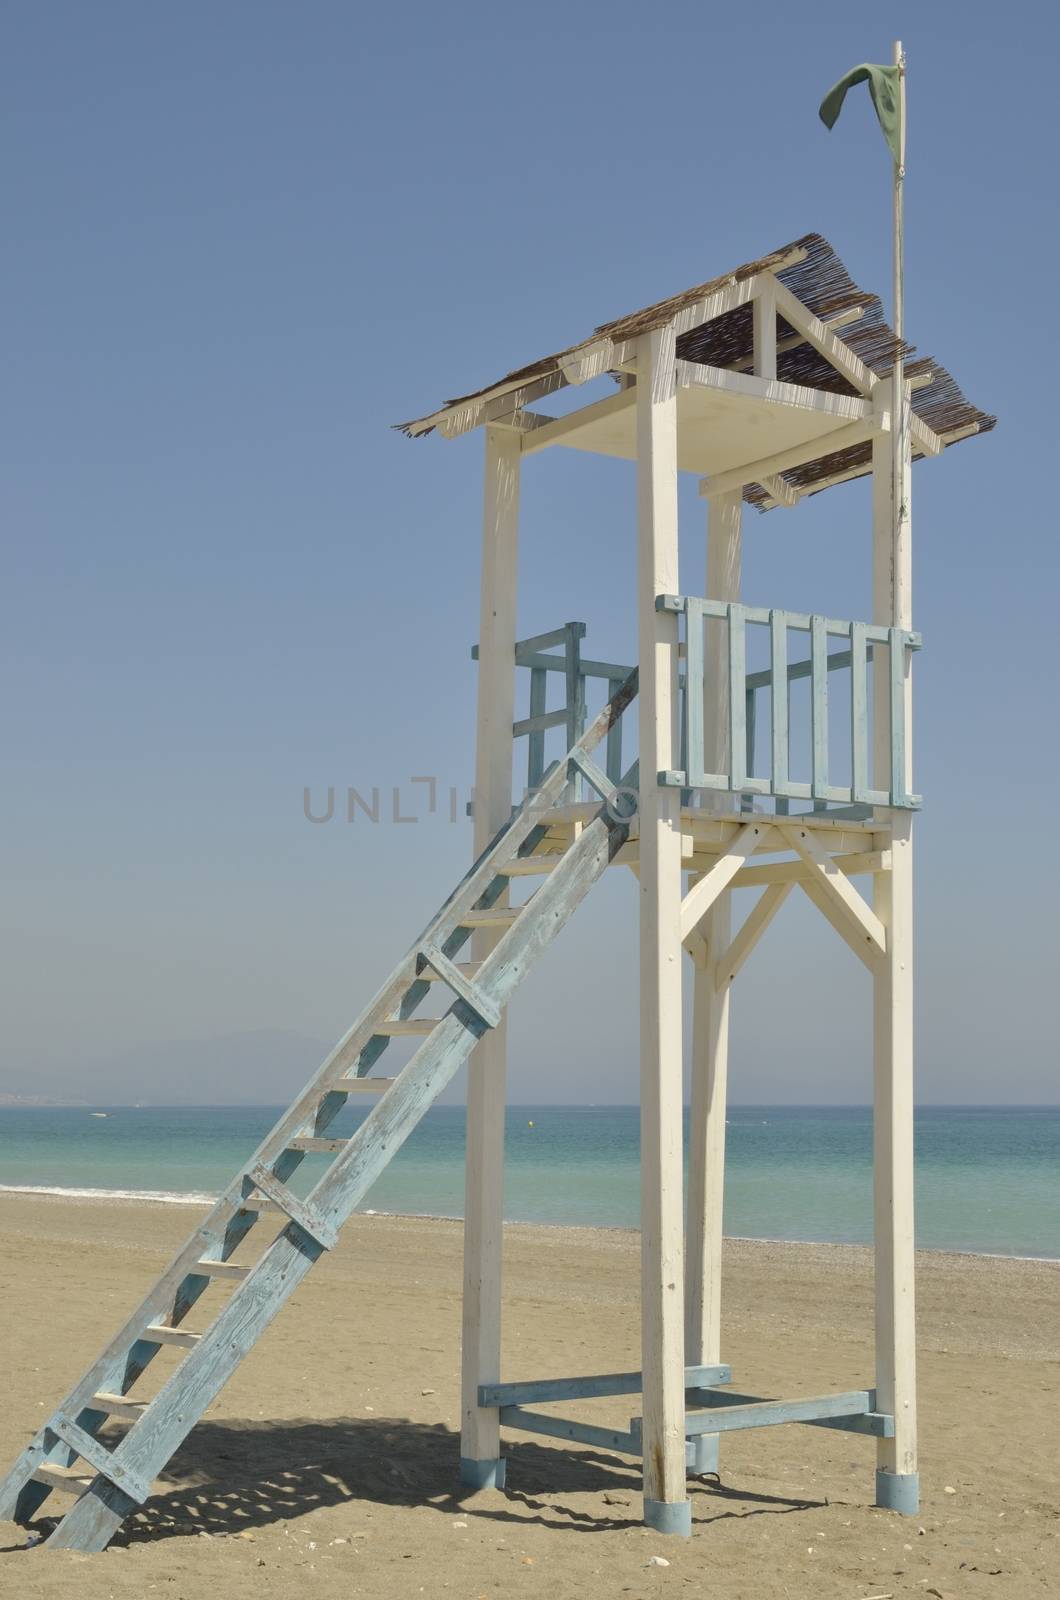 Lifeguard tower on a beach in Manilva, Malaga, Spain